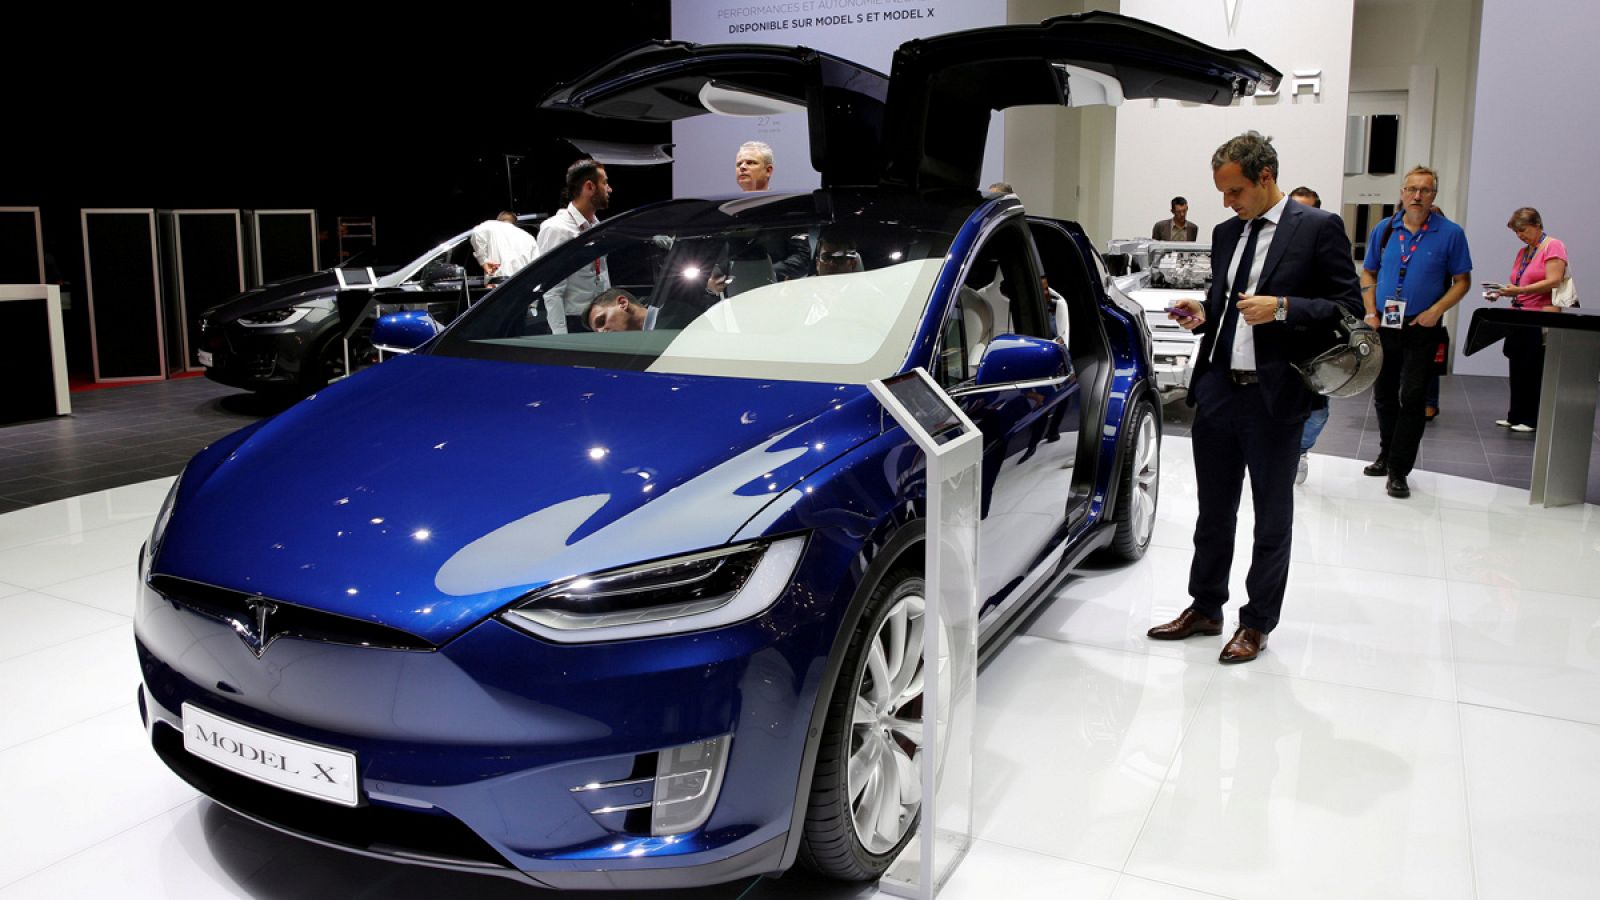 Model X de Tesla, en el Salón del automóvil de París 2016.